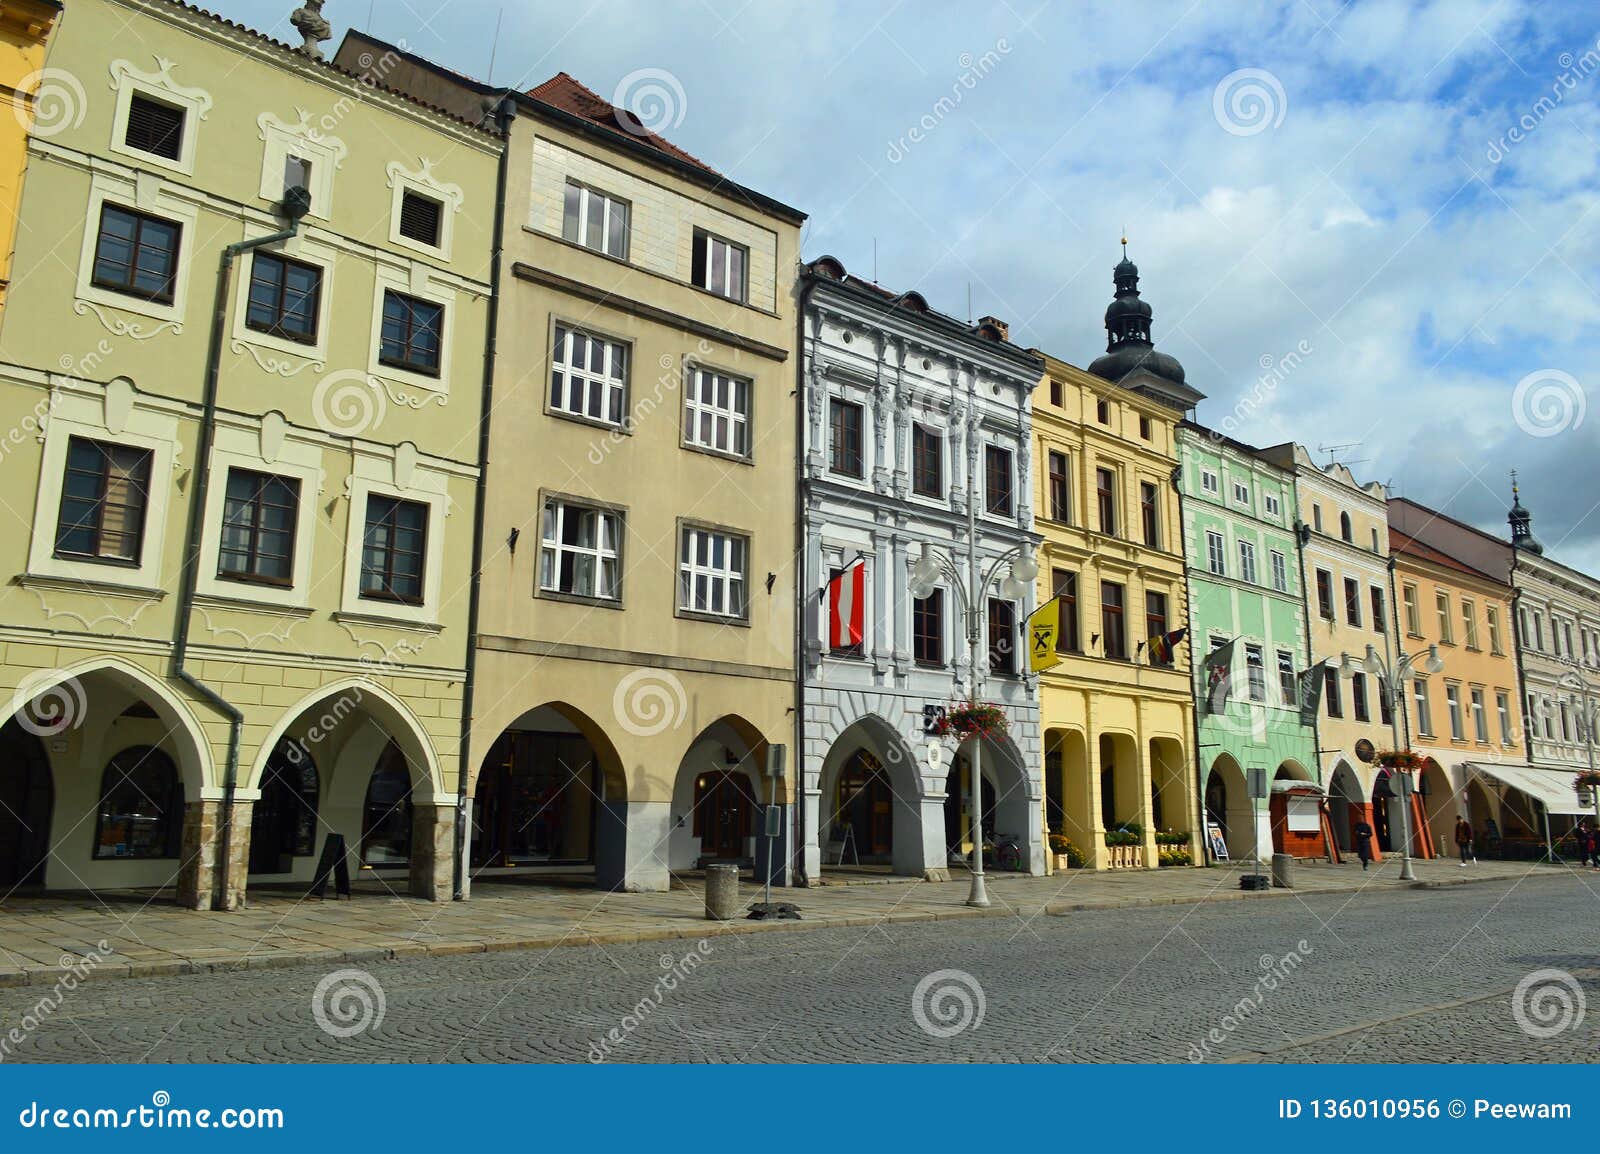 colourful arcaded buildings in ceske budejovice czech republic